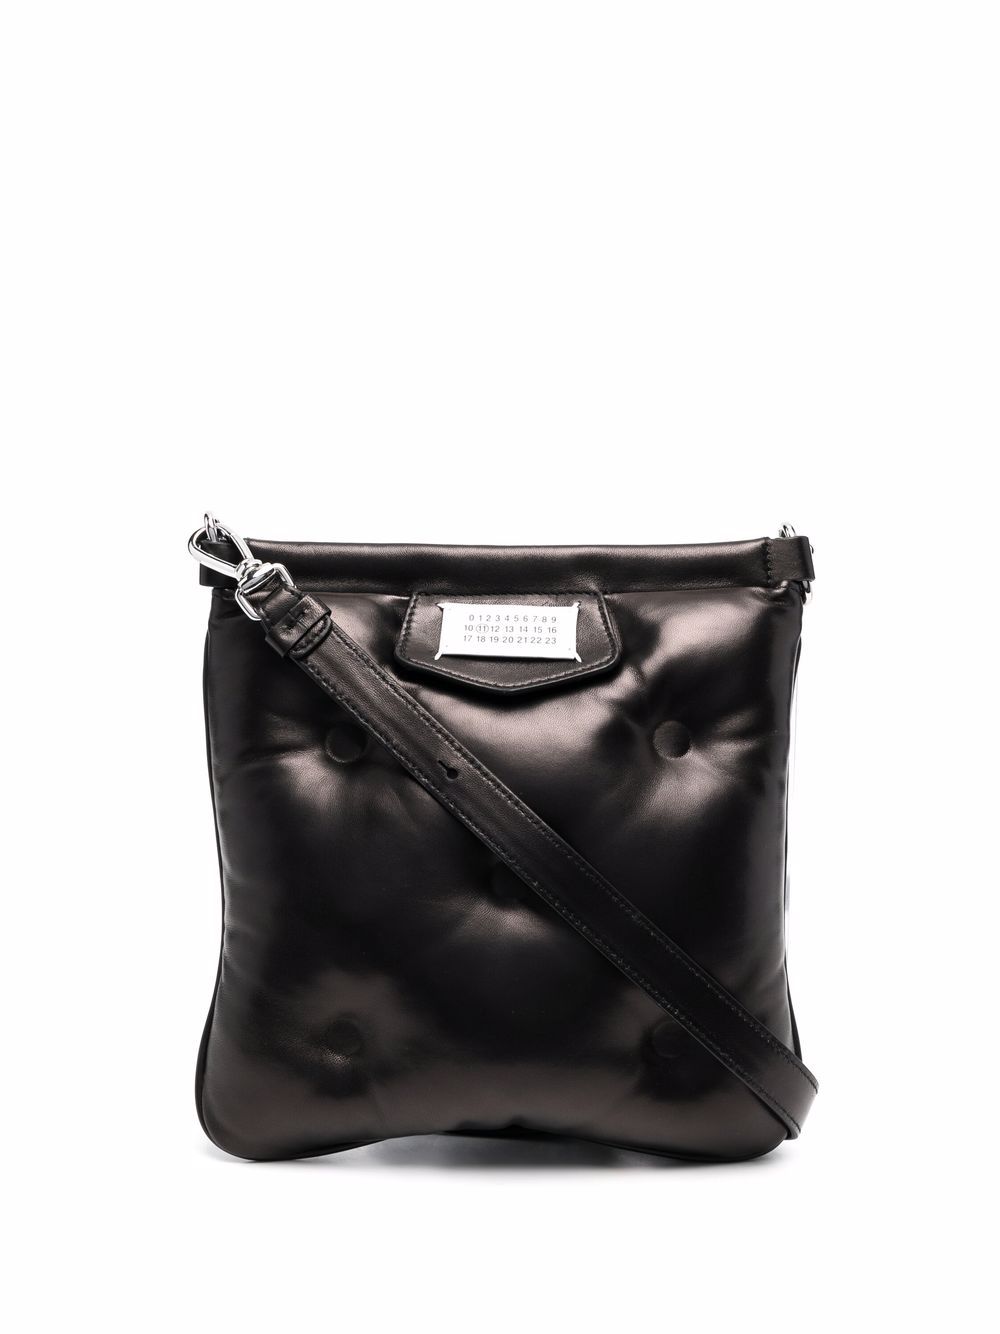 Maison Margiela MAISON MARGIELA- Glam Slam Leather Messenger Bag